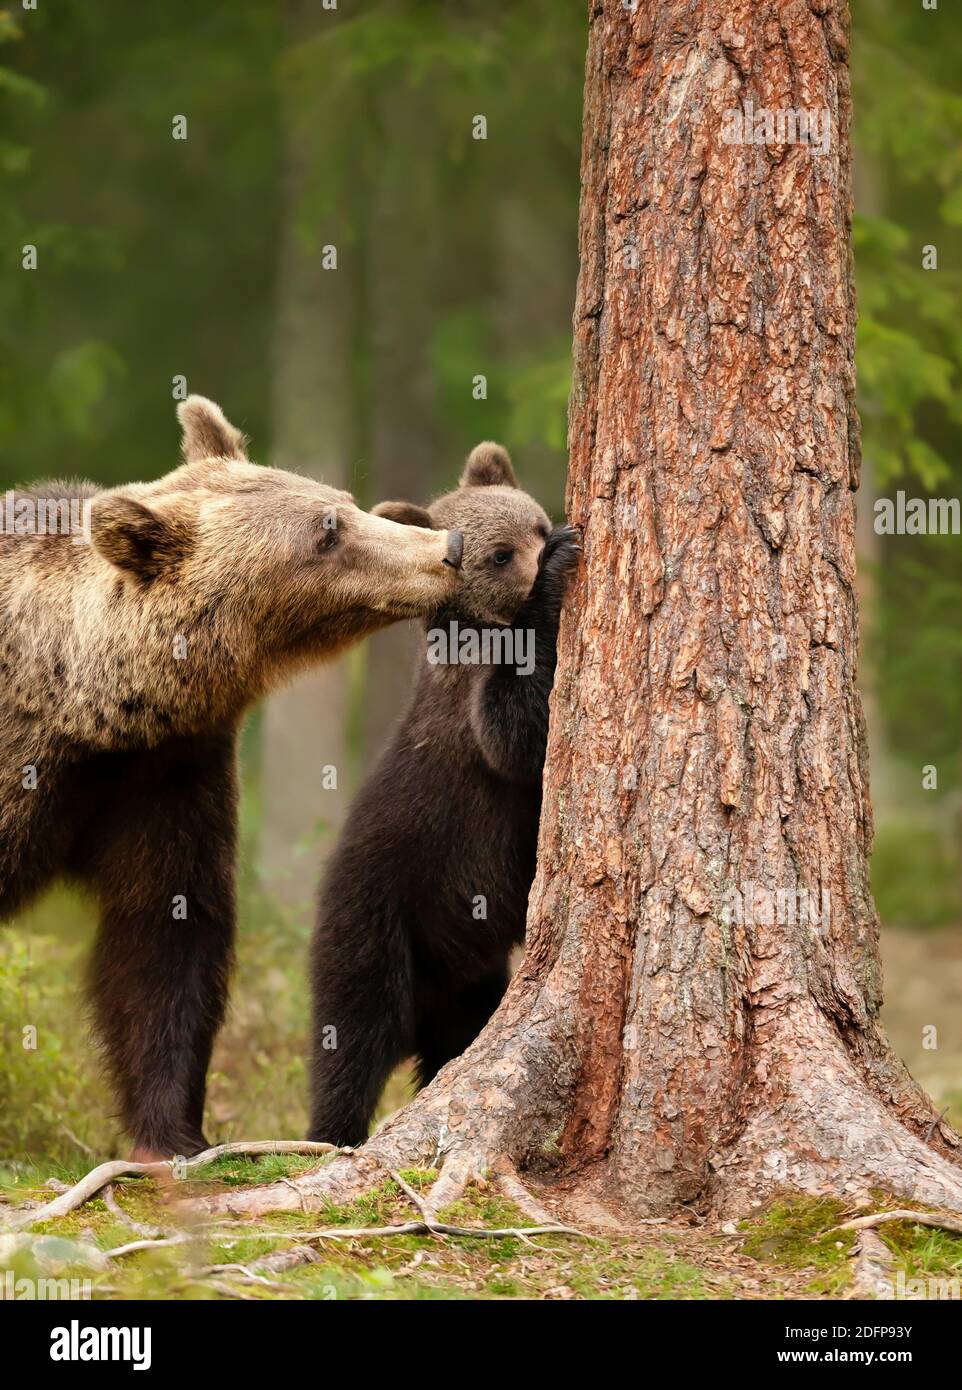 Close up of an Eurasian brown bear (Ursos arctos) watching her playful cub trying to climb a tree, Finland. Stock Photo